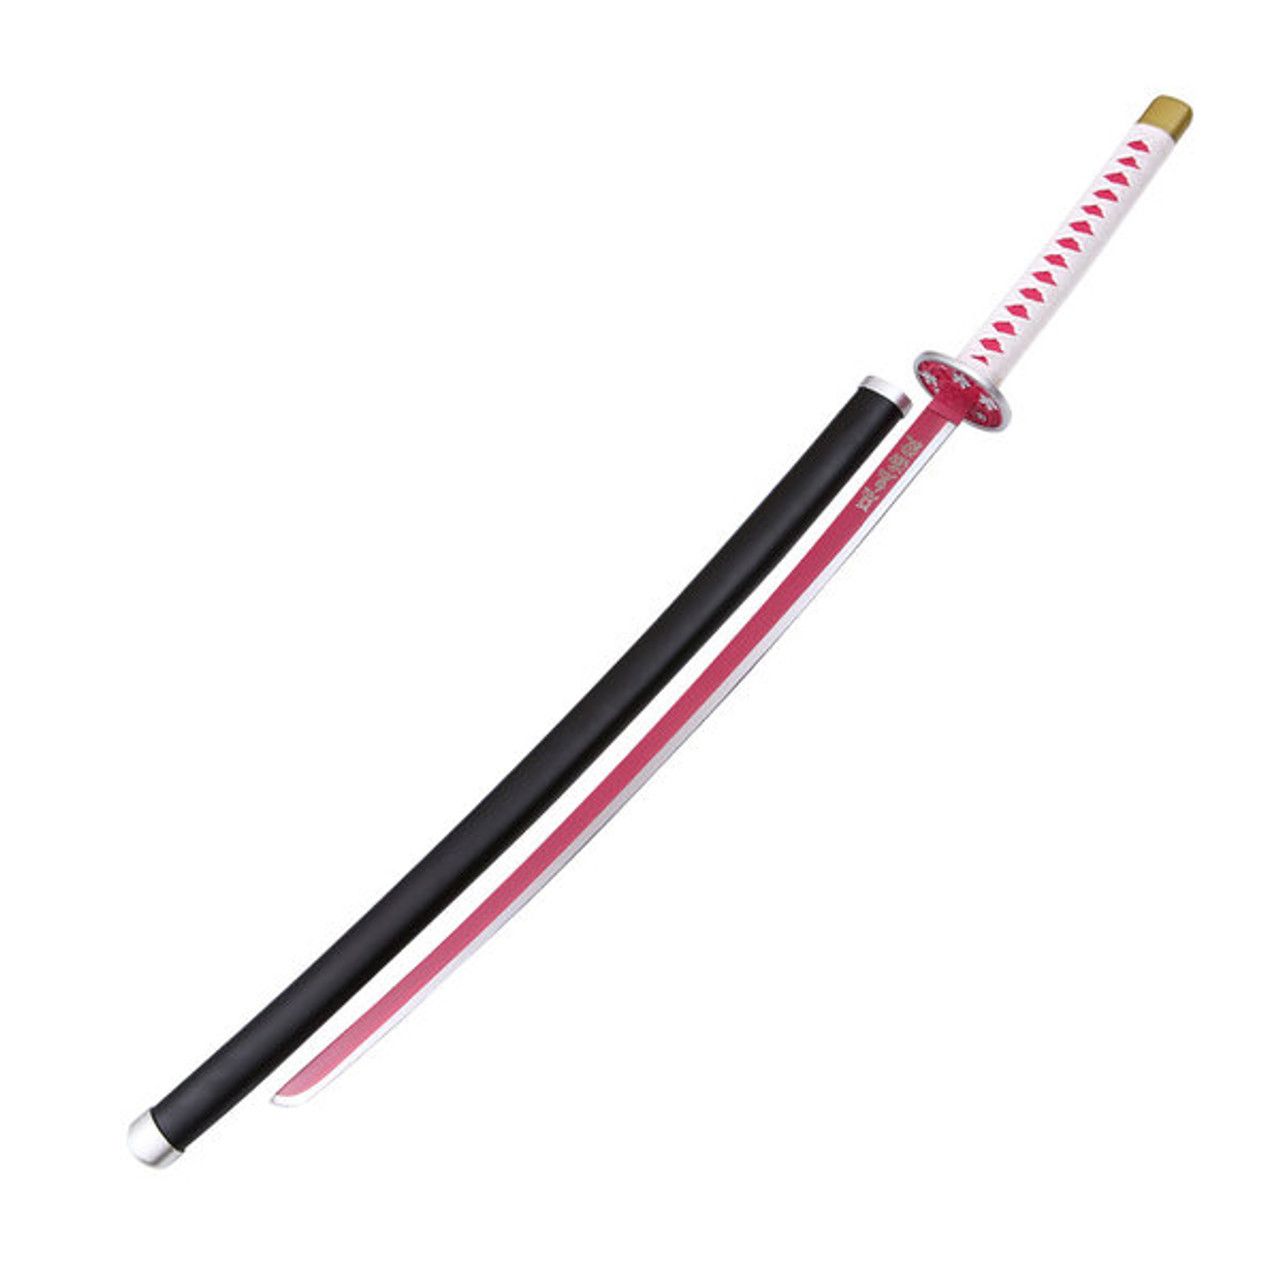 Canawa Metal Sword